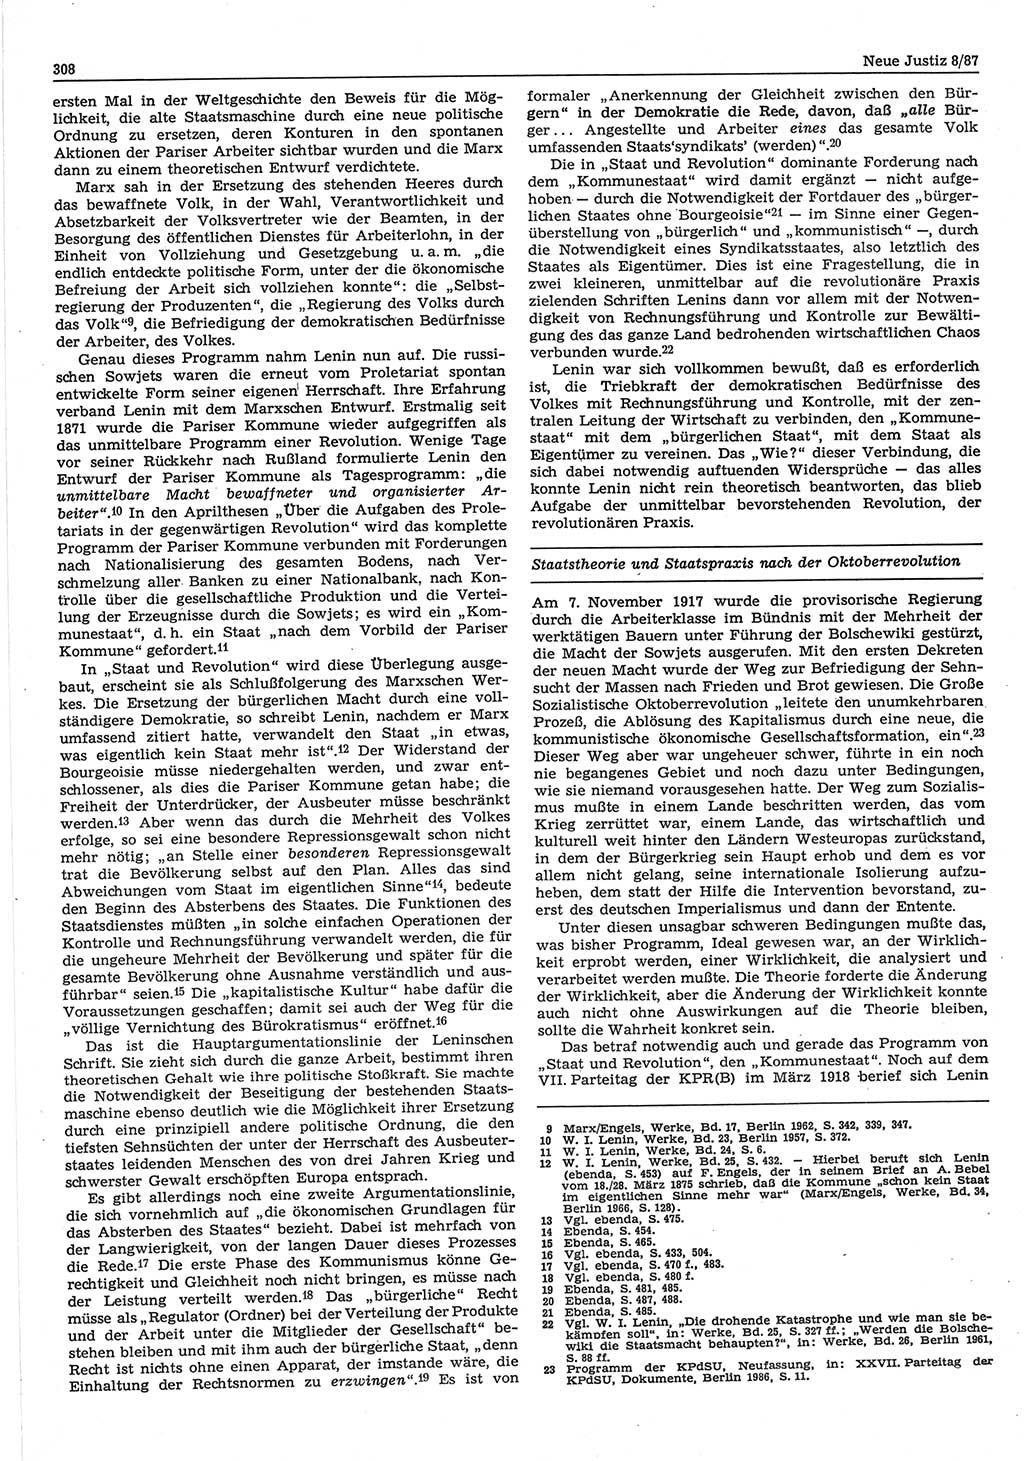 Neue Justiz (NJ), Zeitschrift für sozialistisches Recht und Gesetzlichkeit [Deutsche Demokratische Republik (DDR)], 41. Jahrgang 1987, Seite 308 (NJ DDR 1987, S. 308)